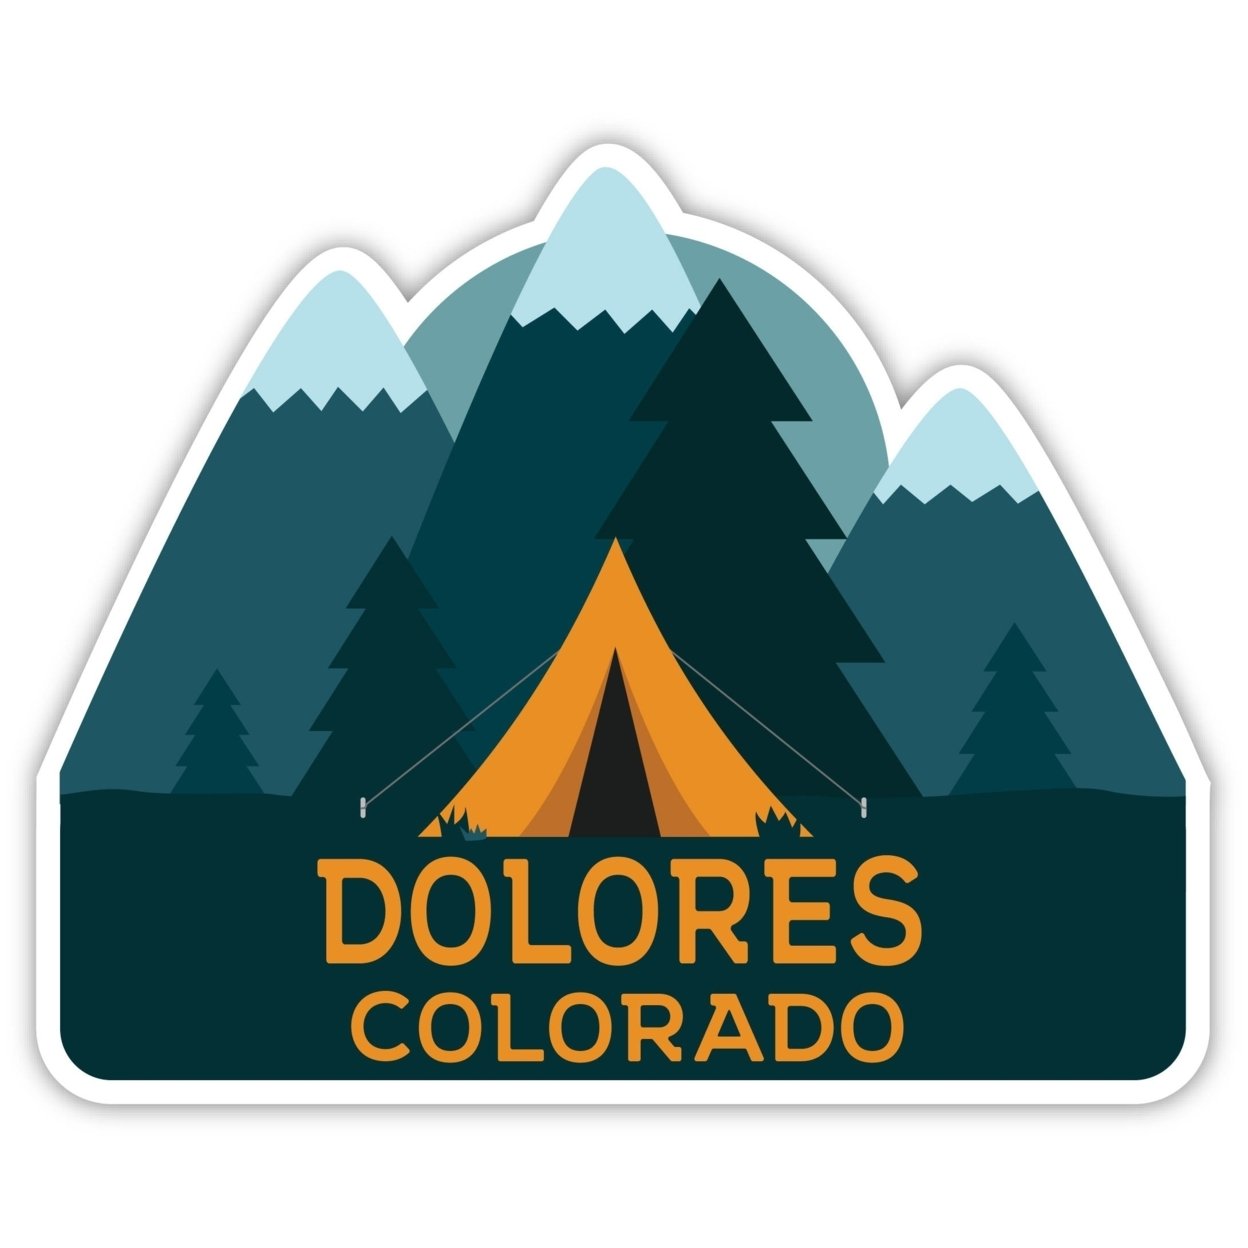 Dolores Colorado Souvenir Decorative Stickers (Choose Theme And Size) - Single Unit, 8-Inch, Tent